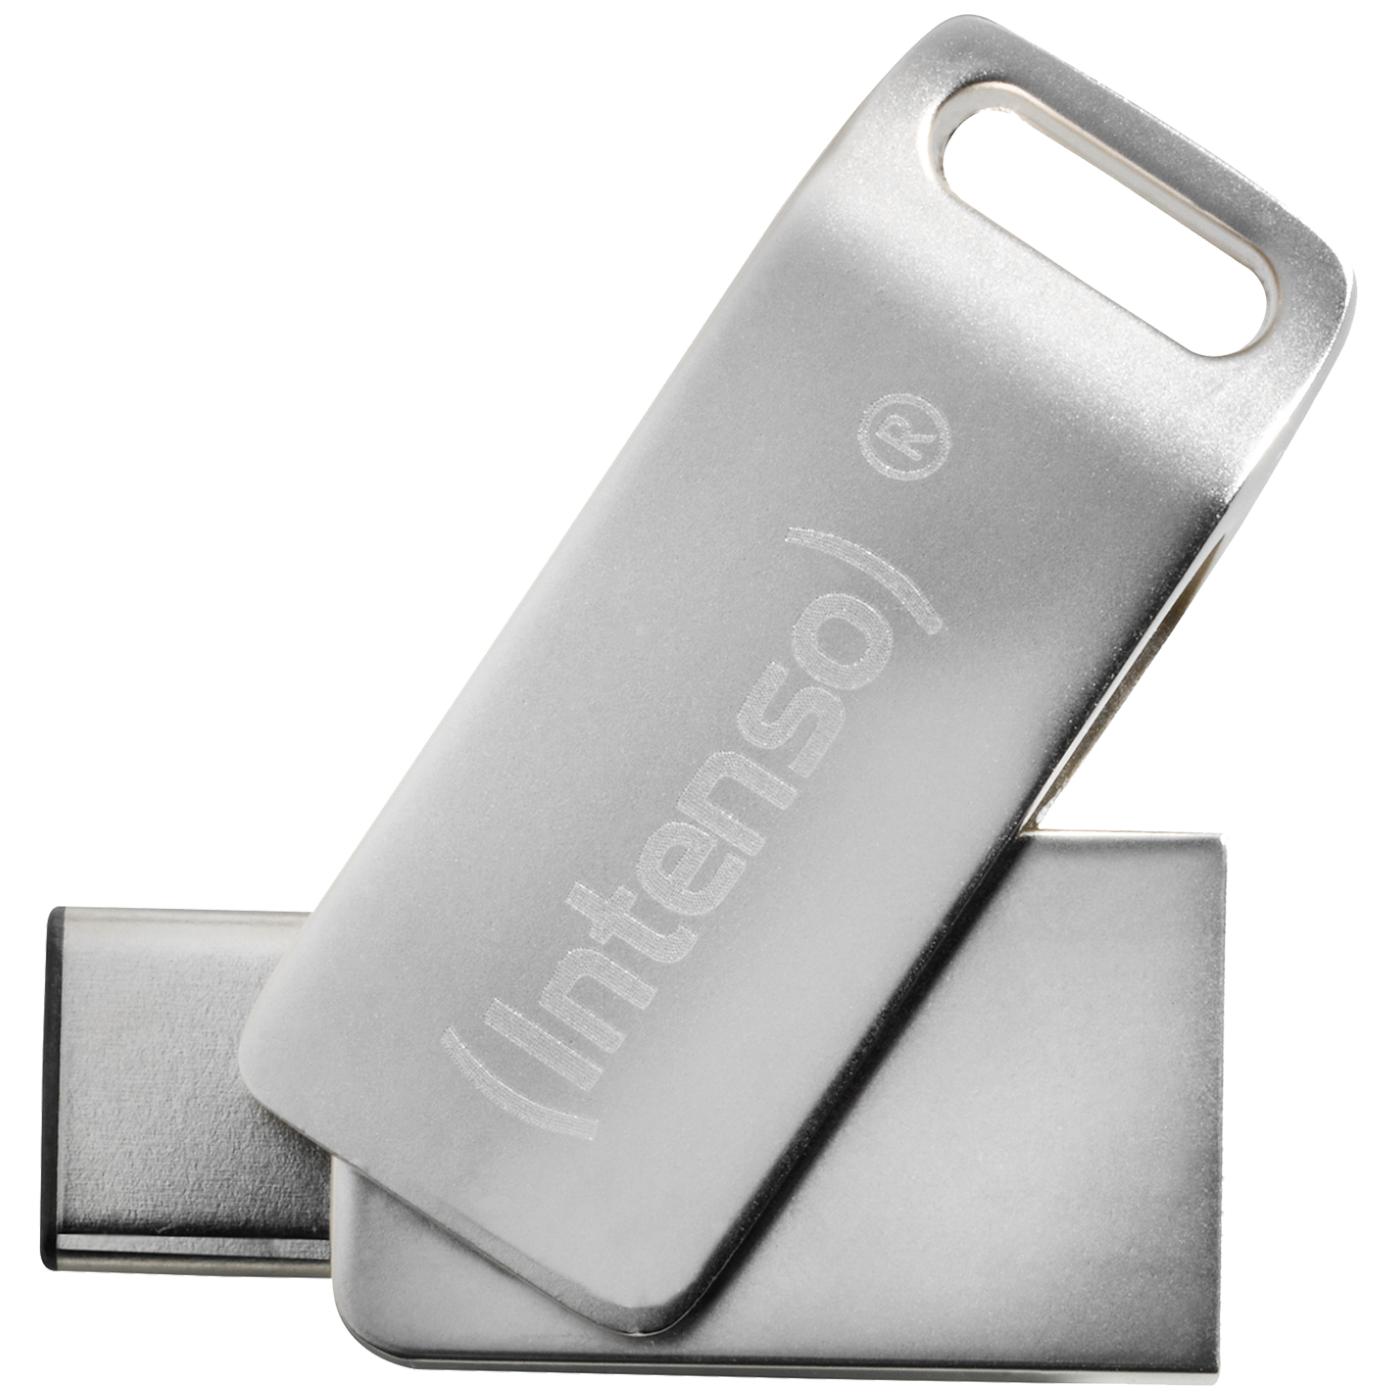 USB Flash drive 64GB Hi-Speed USB 3.0, Micro USB C port